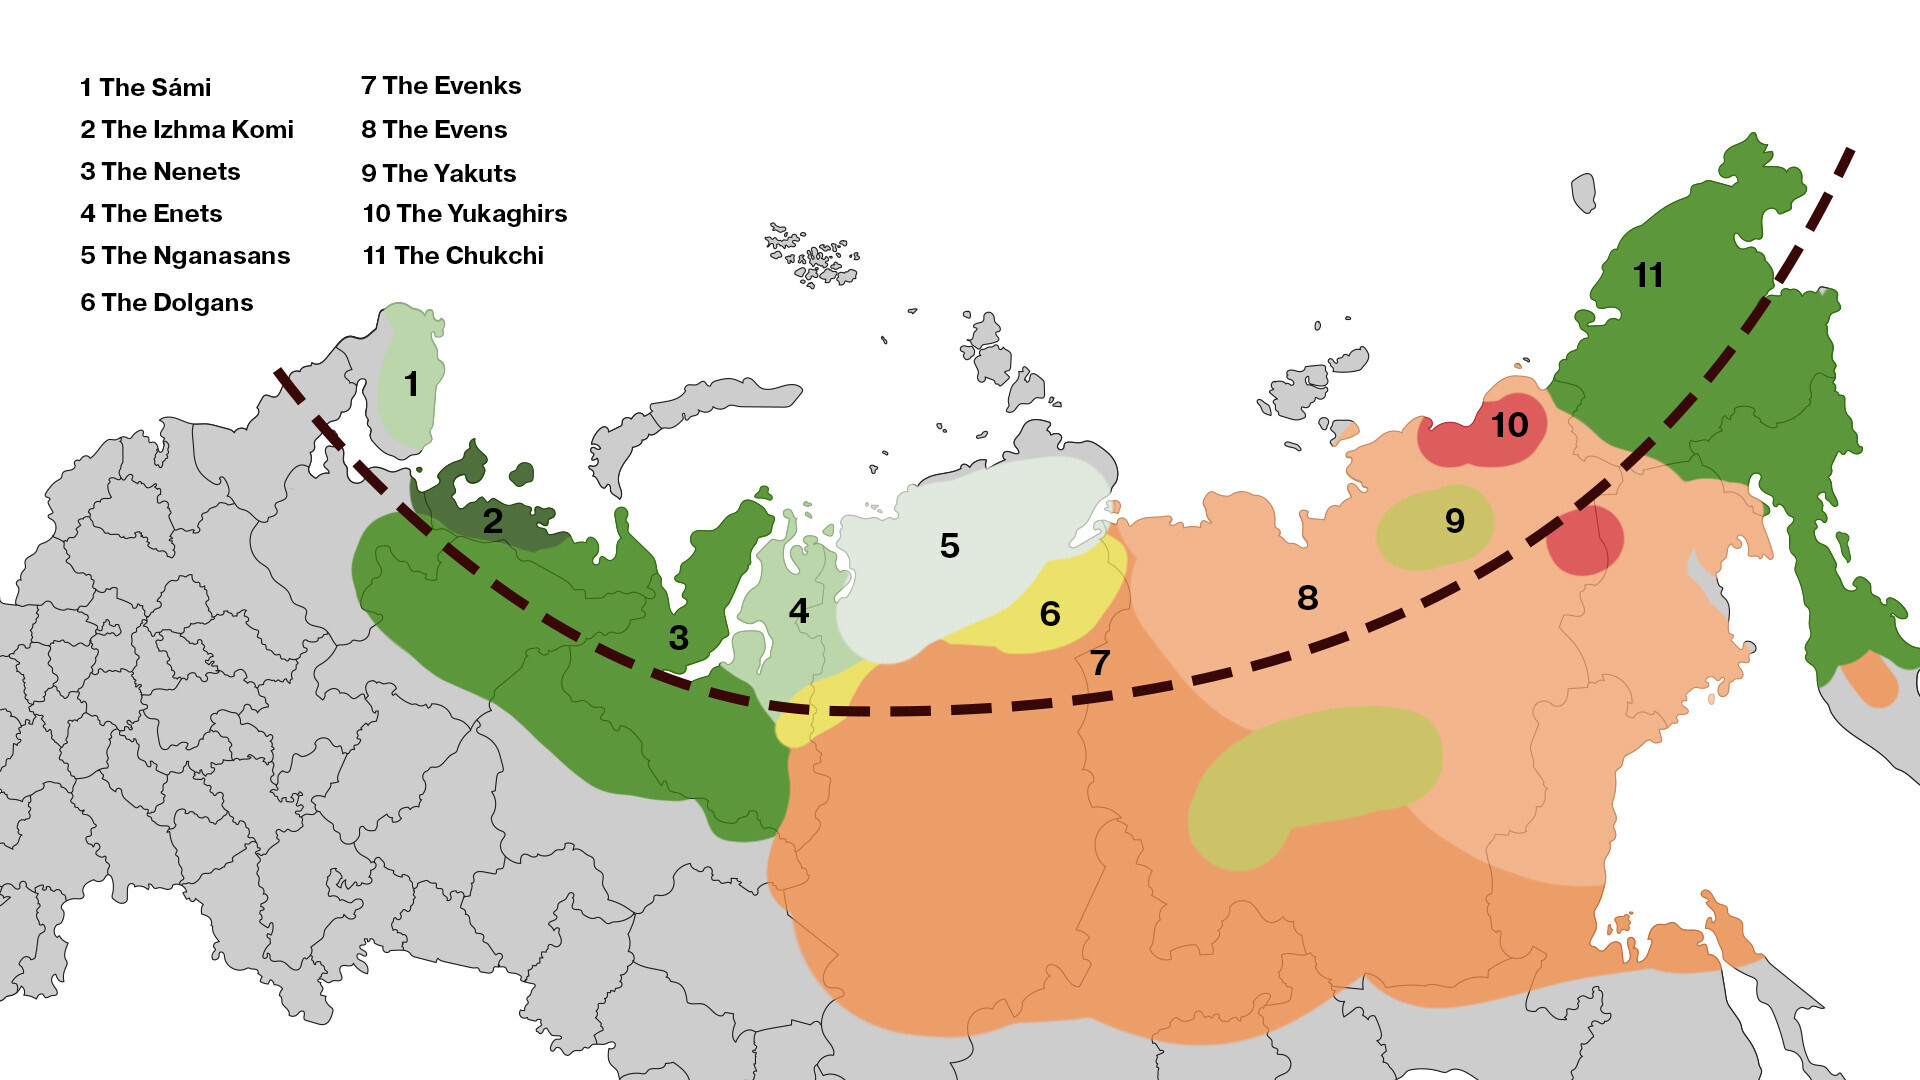 Di sinilah masyarakat adat Utara tinggal di Rusia. Tentu saja, tidak hanya mereka yang tinggal di wilayah ini.